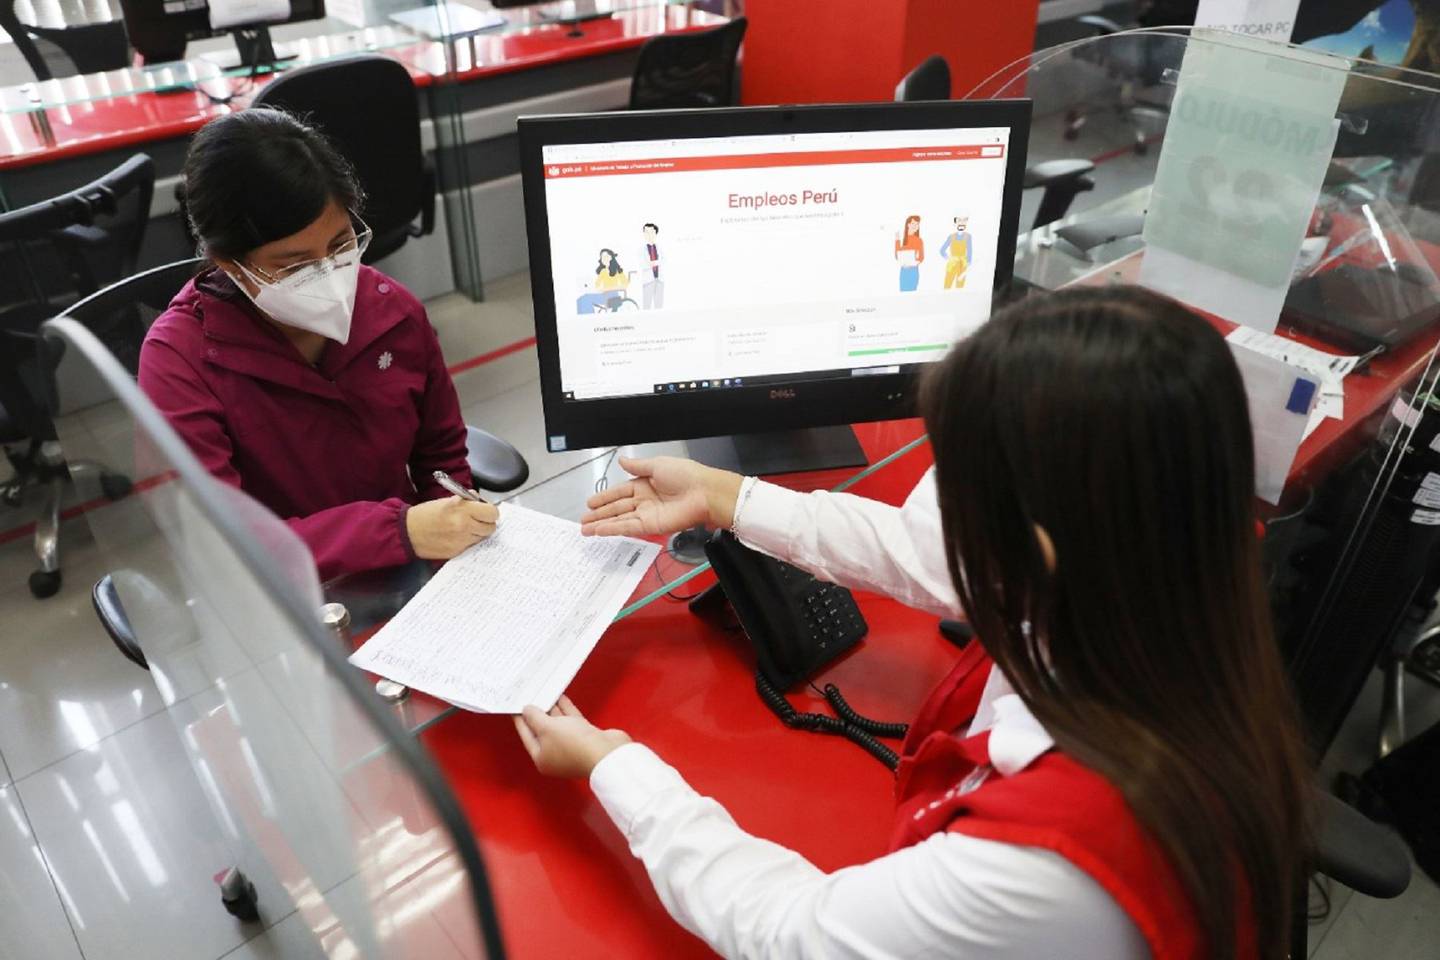 Cifras de crecimiento del empleo en Perú ocultan debilidad del mercado laboral, alerta Fitch Ratings.dfd